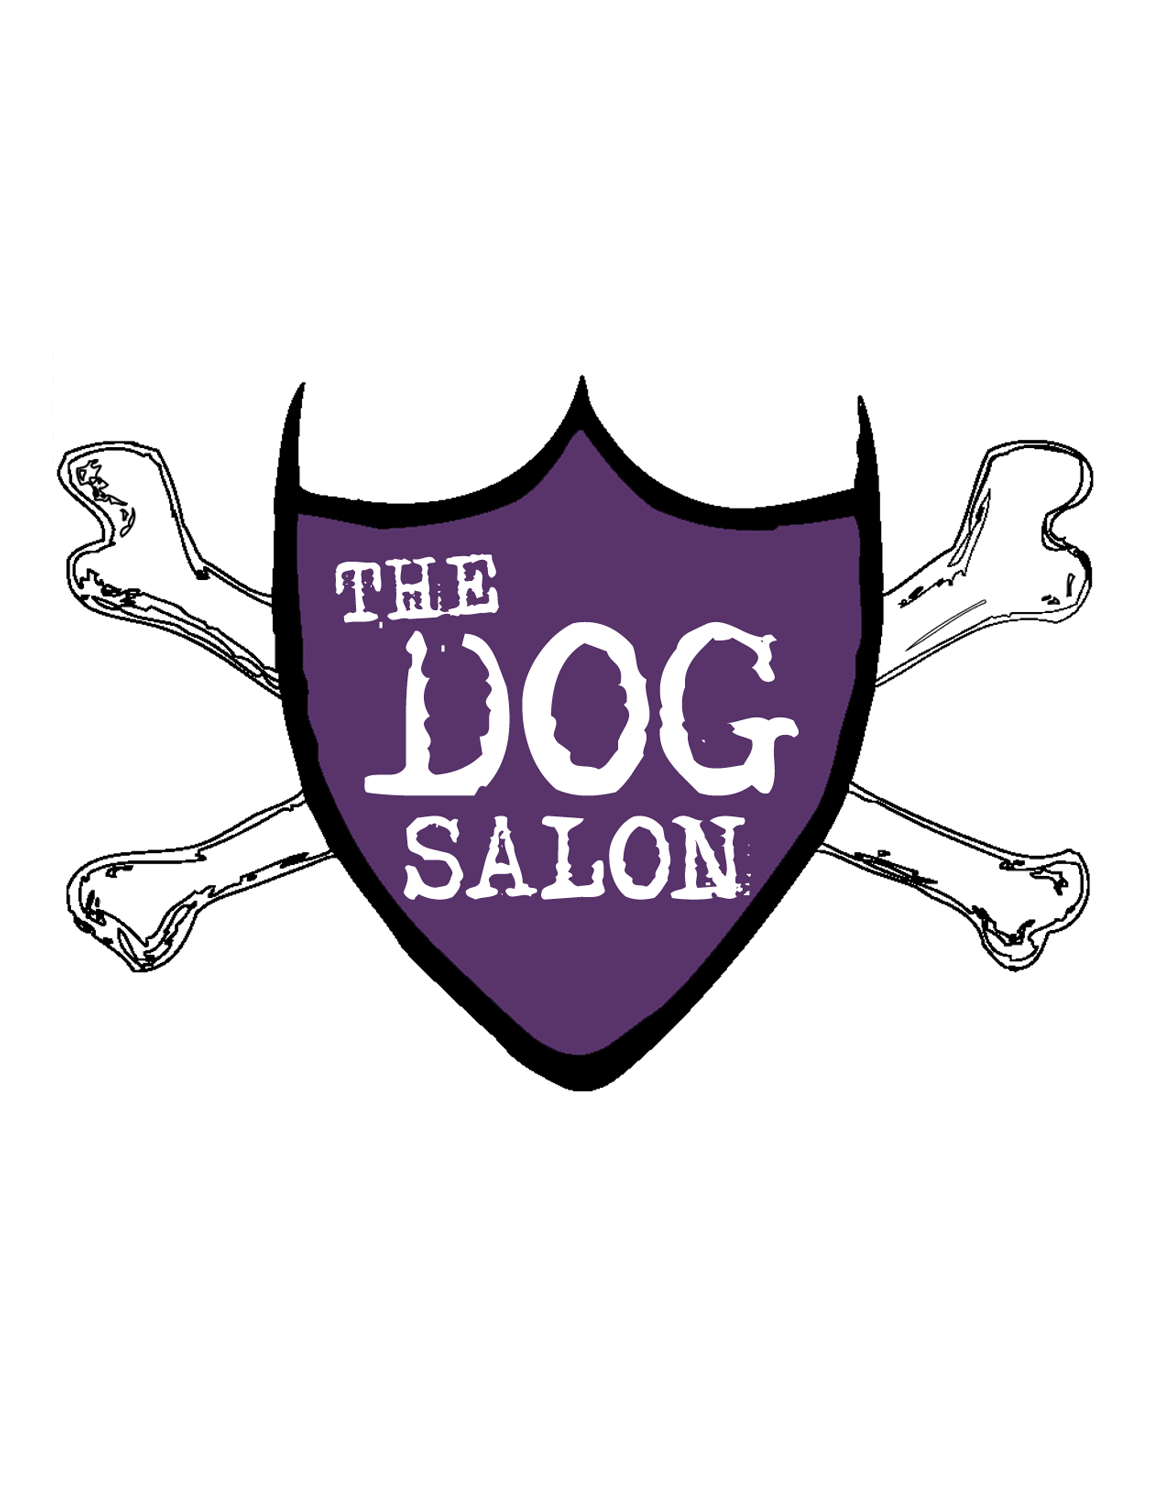 THE DOG SALON